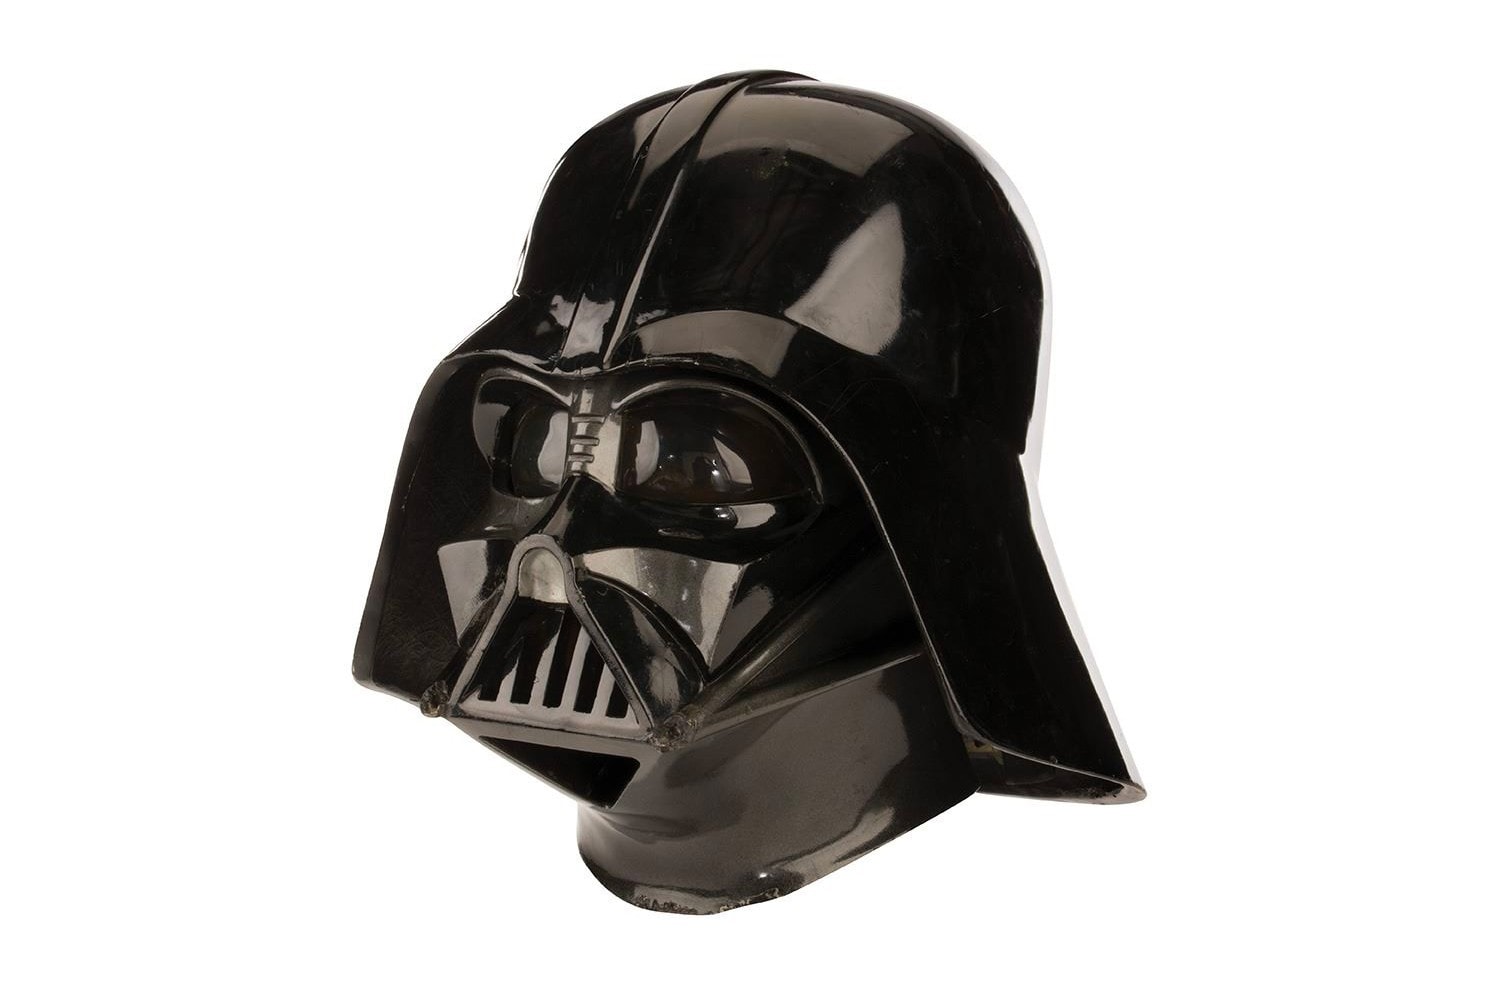 《Star Wars》電影元祖 Darth Vader 面罩頭盔正展開拍賣